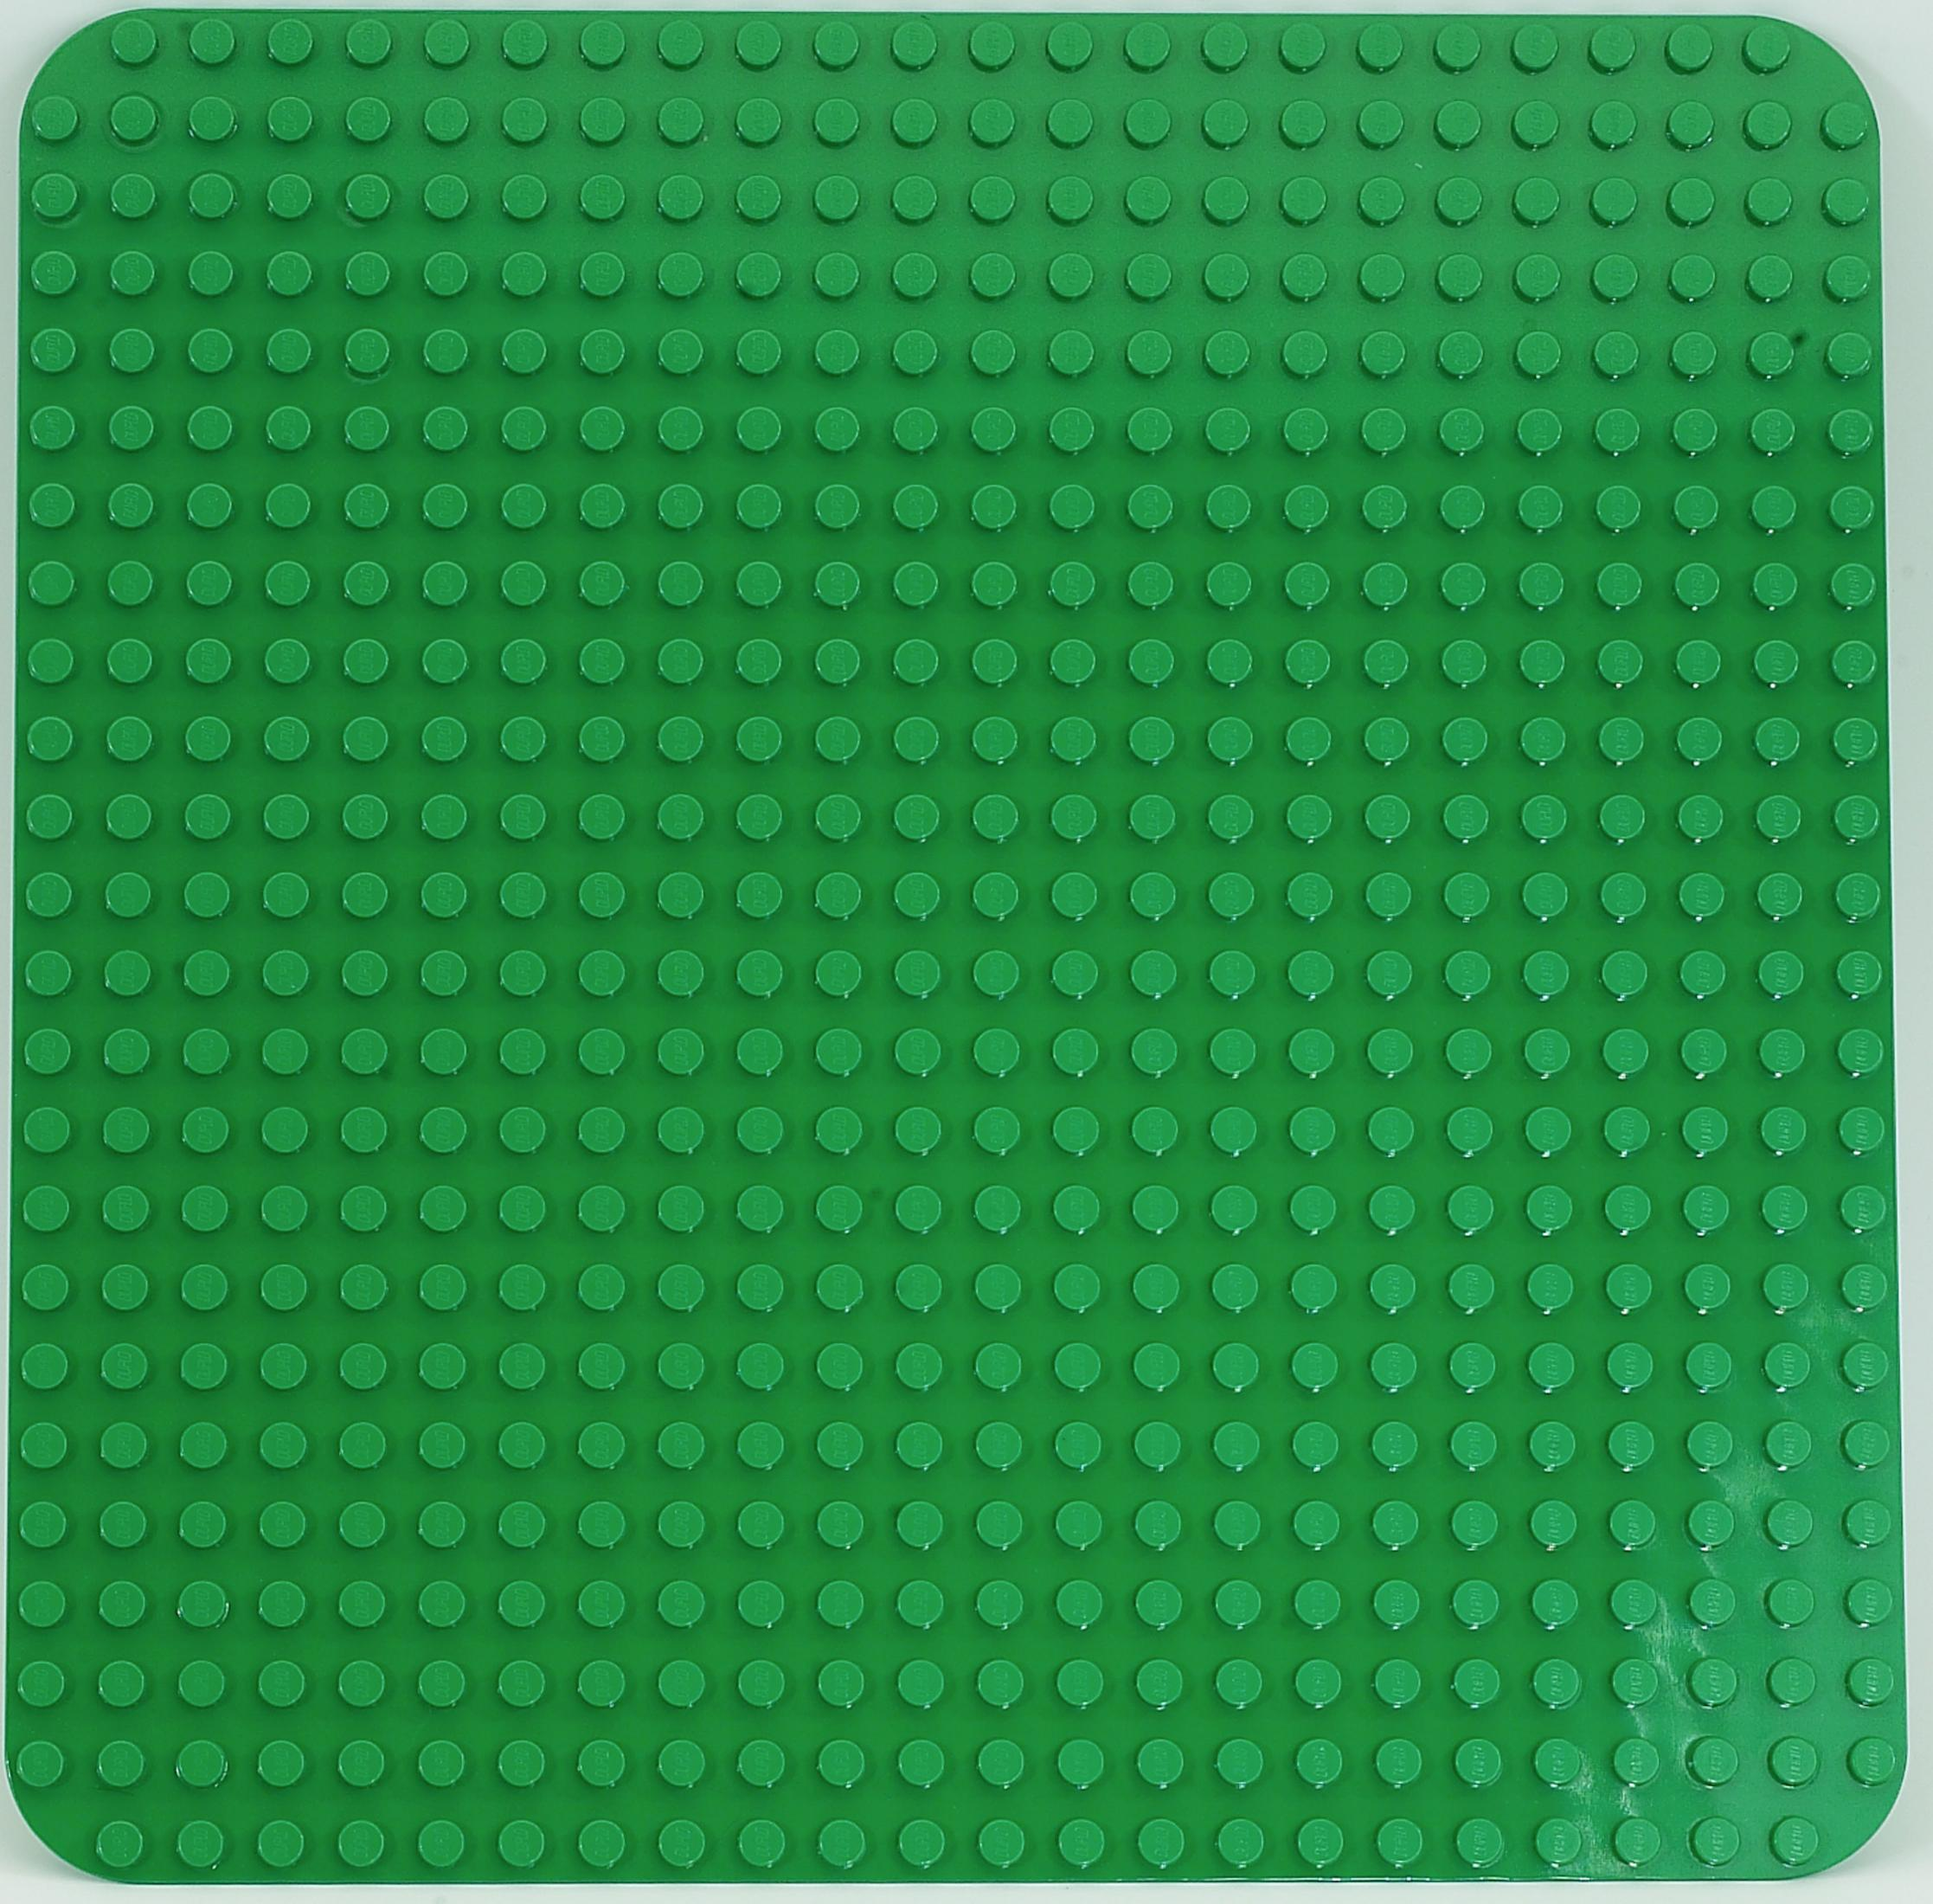 LEGO 2304 GROSSE Bauplatte, BAUPLATTE Grün GRÜN